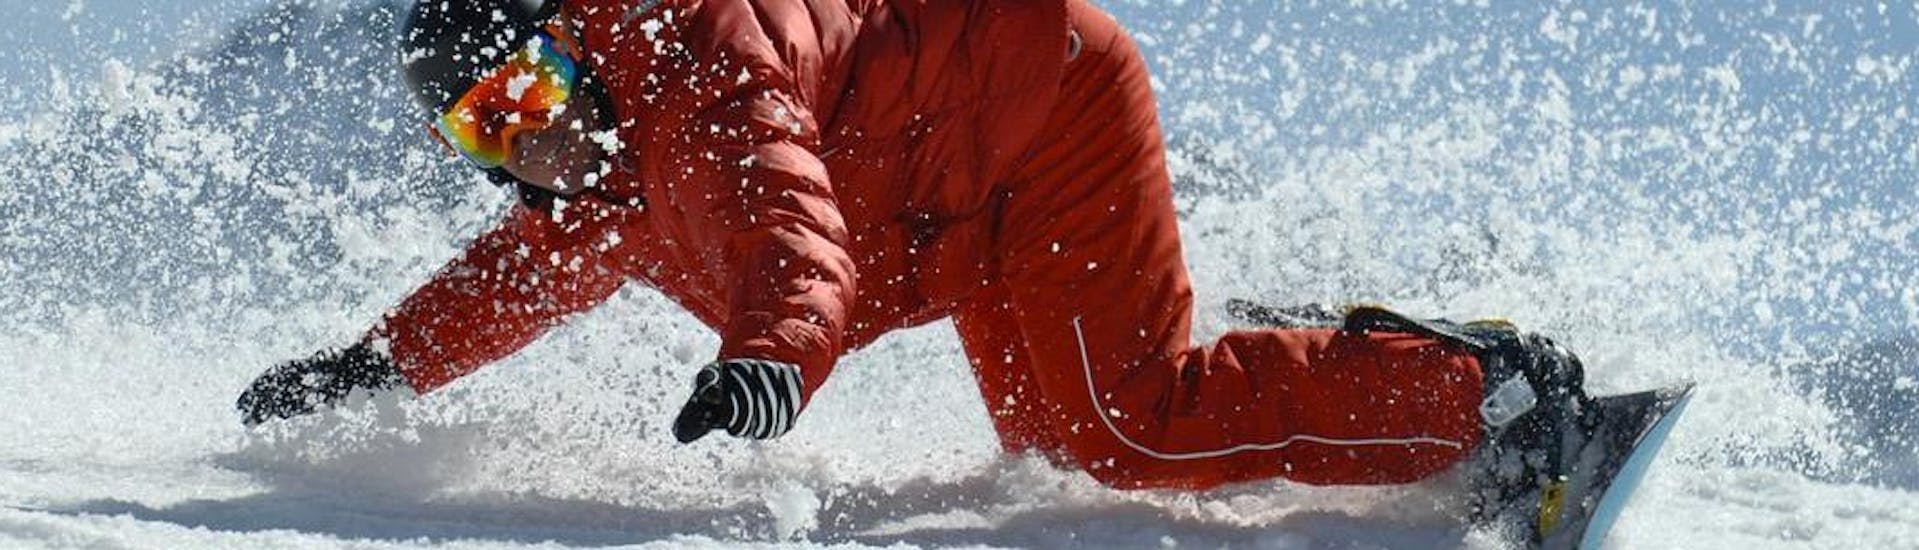 Ein Snowboarder meistert seine Frontside- und Backside-Turns während des privaten Snowboard-Kurses der von einem Team der ESF Val d'Isère zugeschnitten wurde - Für alle Levels und Altersgruppen.